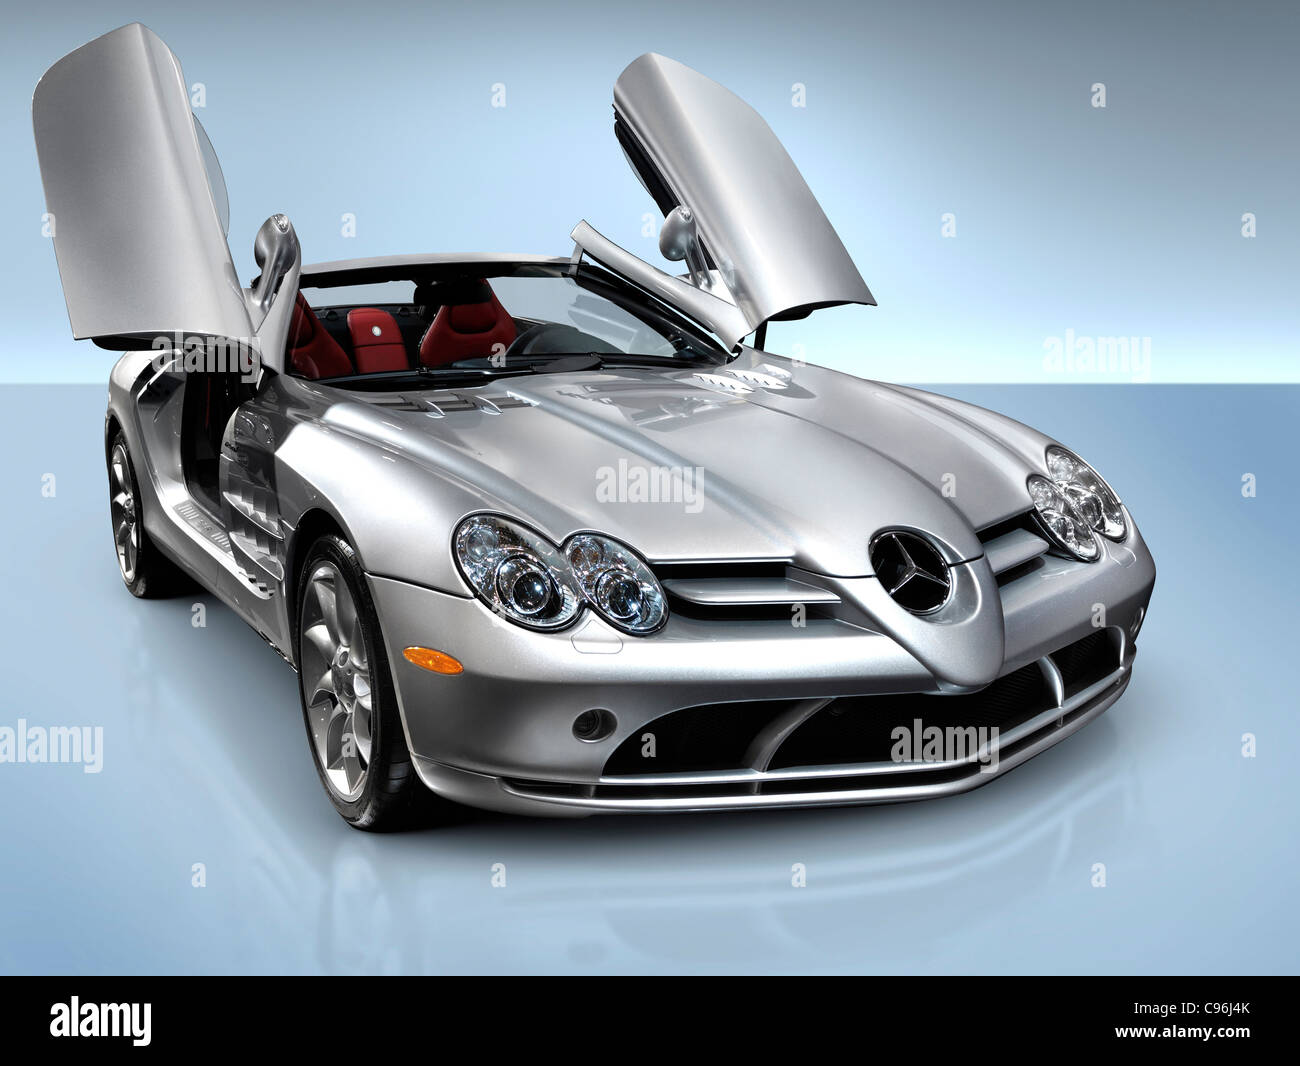 Licence et tirages sur MaximImages.com - Mercedes Benz voiture de luxe, photo de stock automobile. Banque D'Images